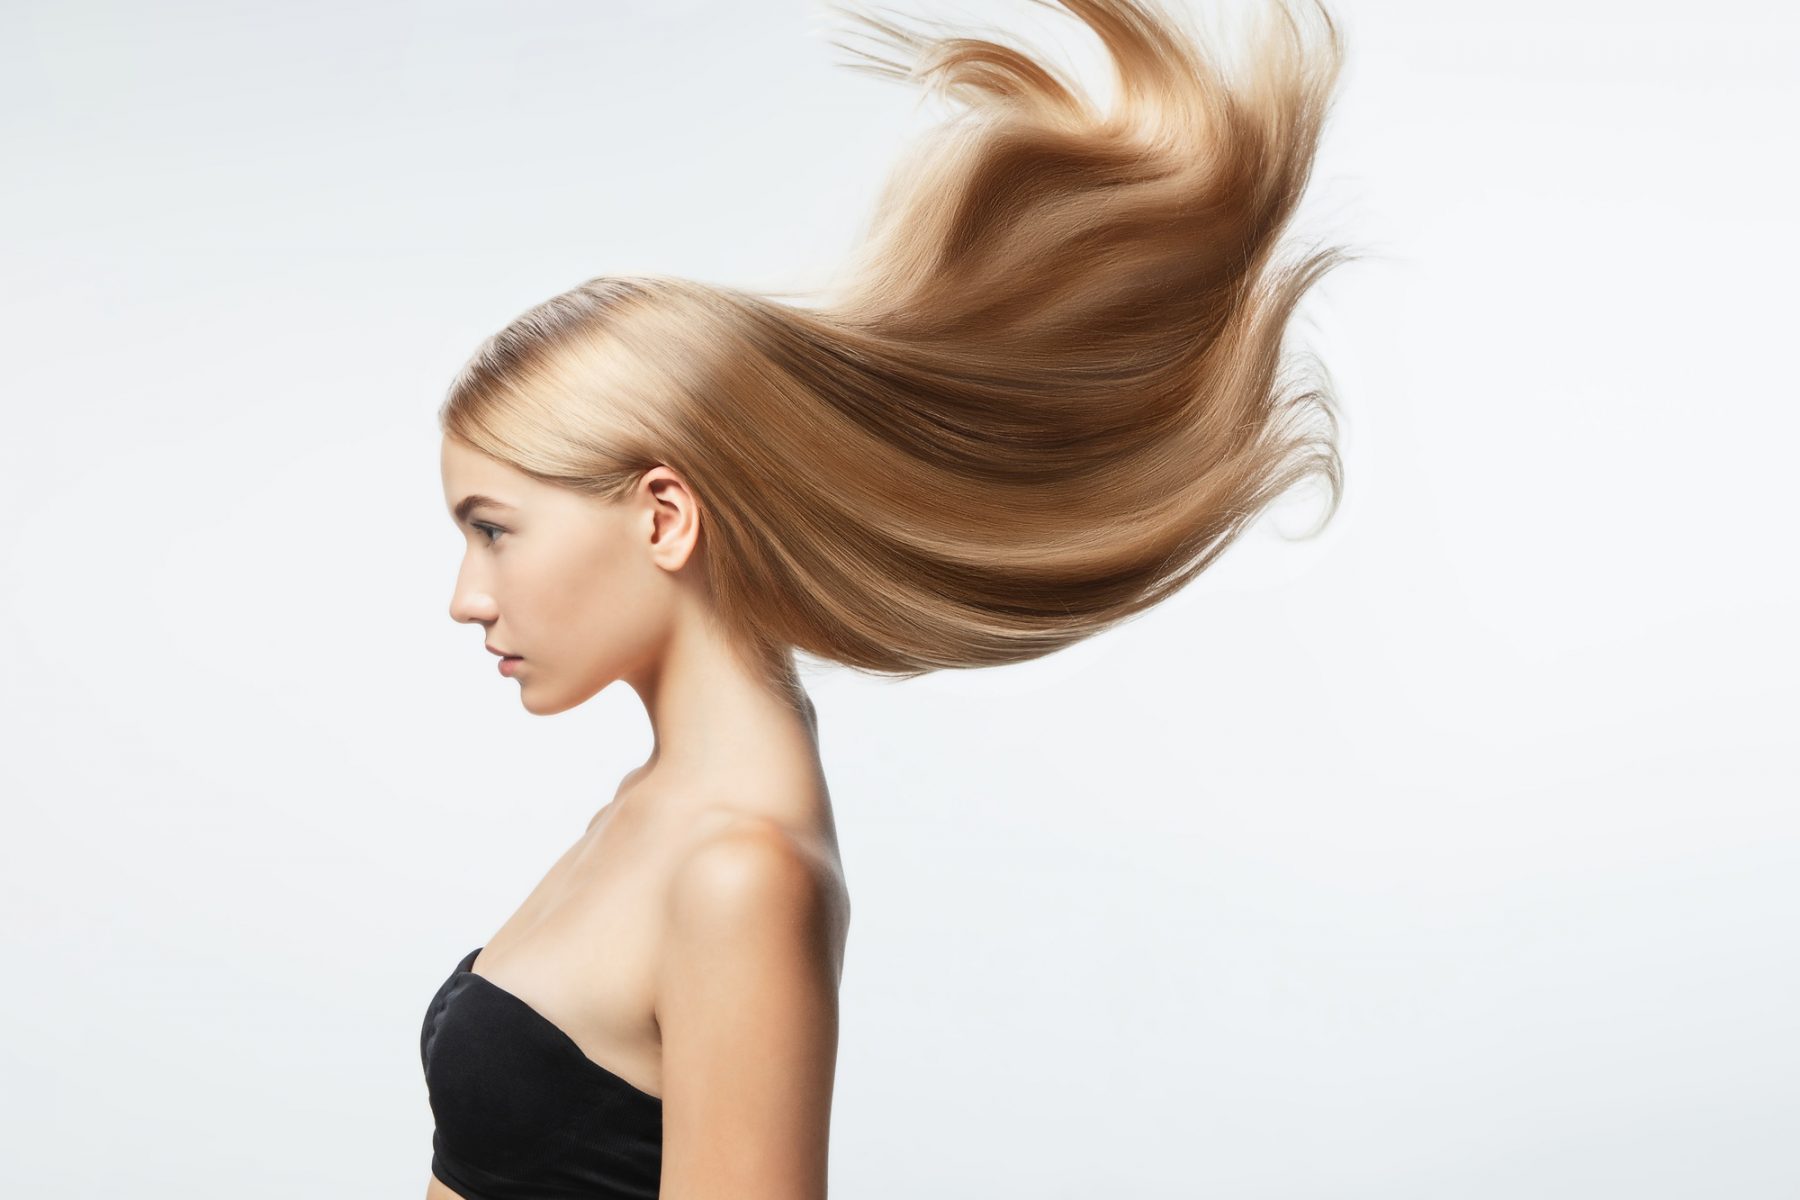 Βιοτίνη: Οι ευεργετικές ιδιότητες της βιοτίνης στα μαλλιά και τον οργανισμό